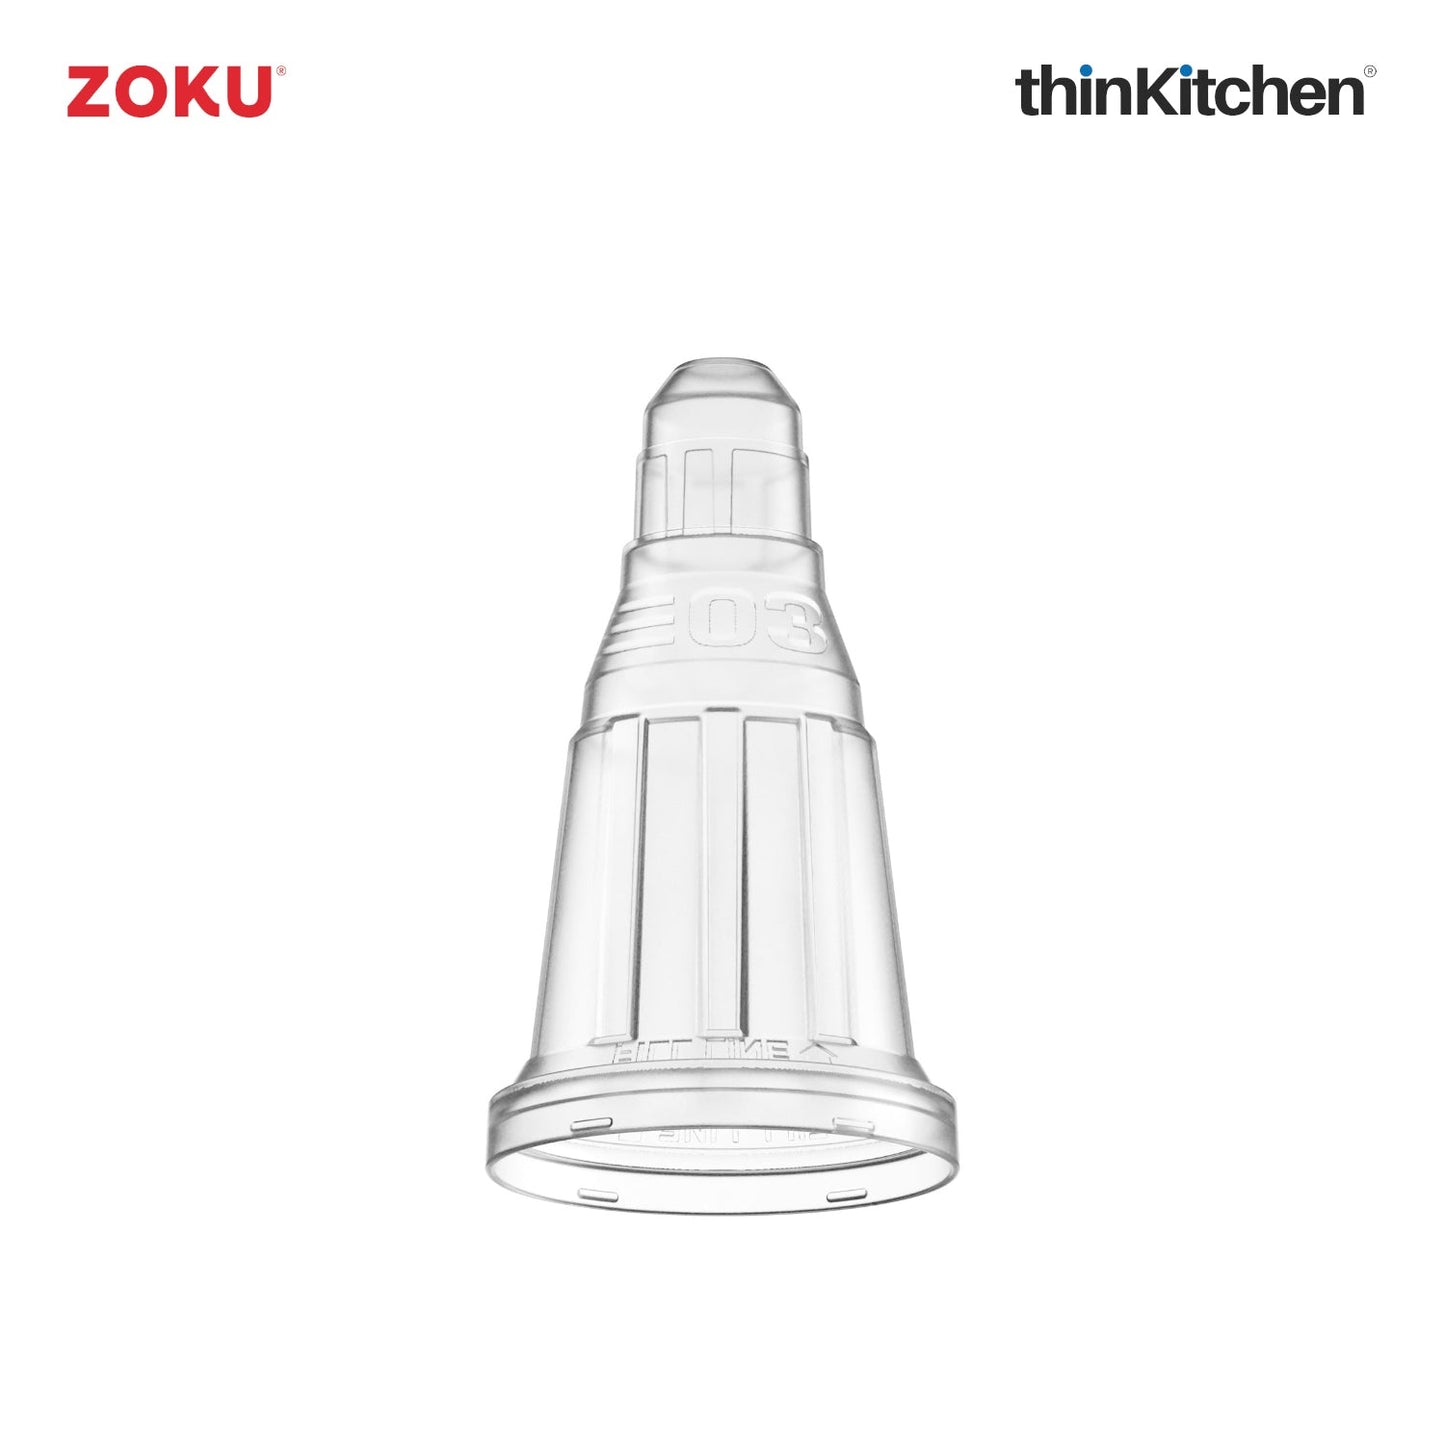 thinKitchen™ Zoku Space Pop Mold